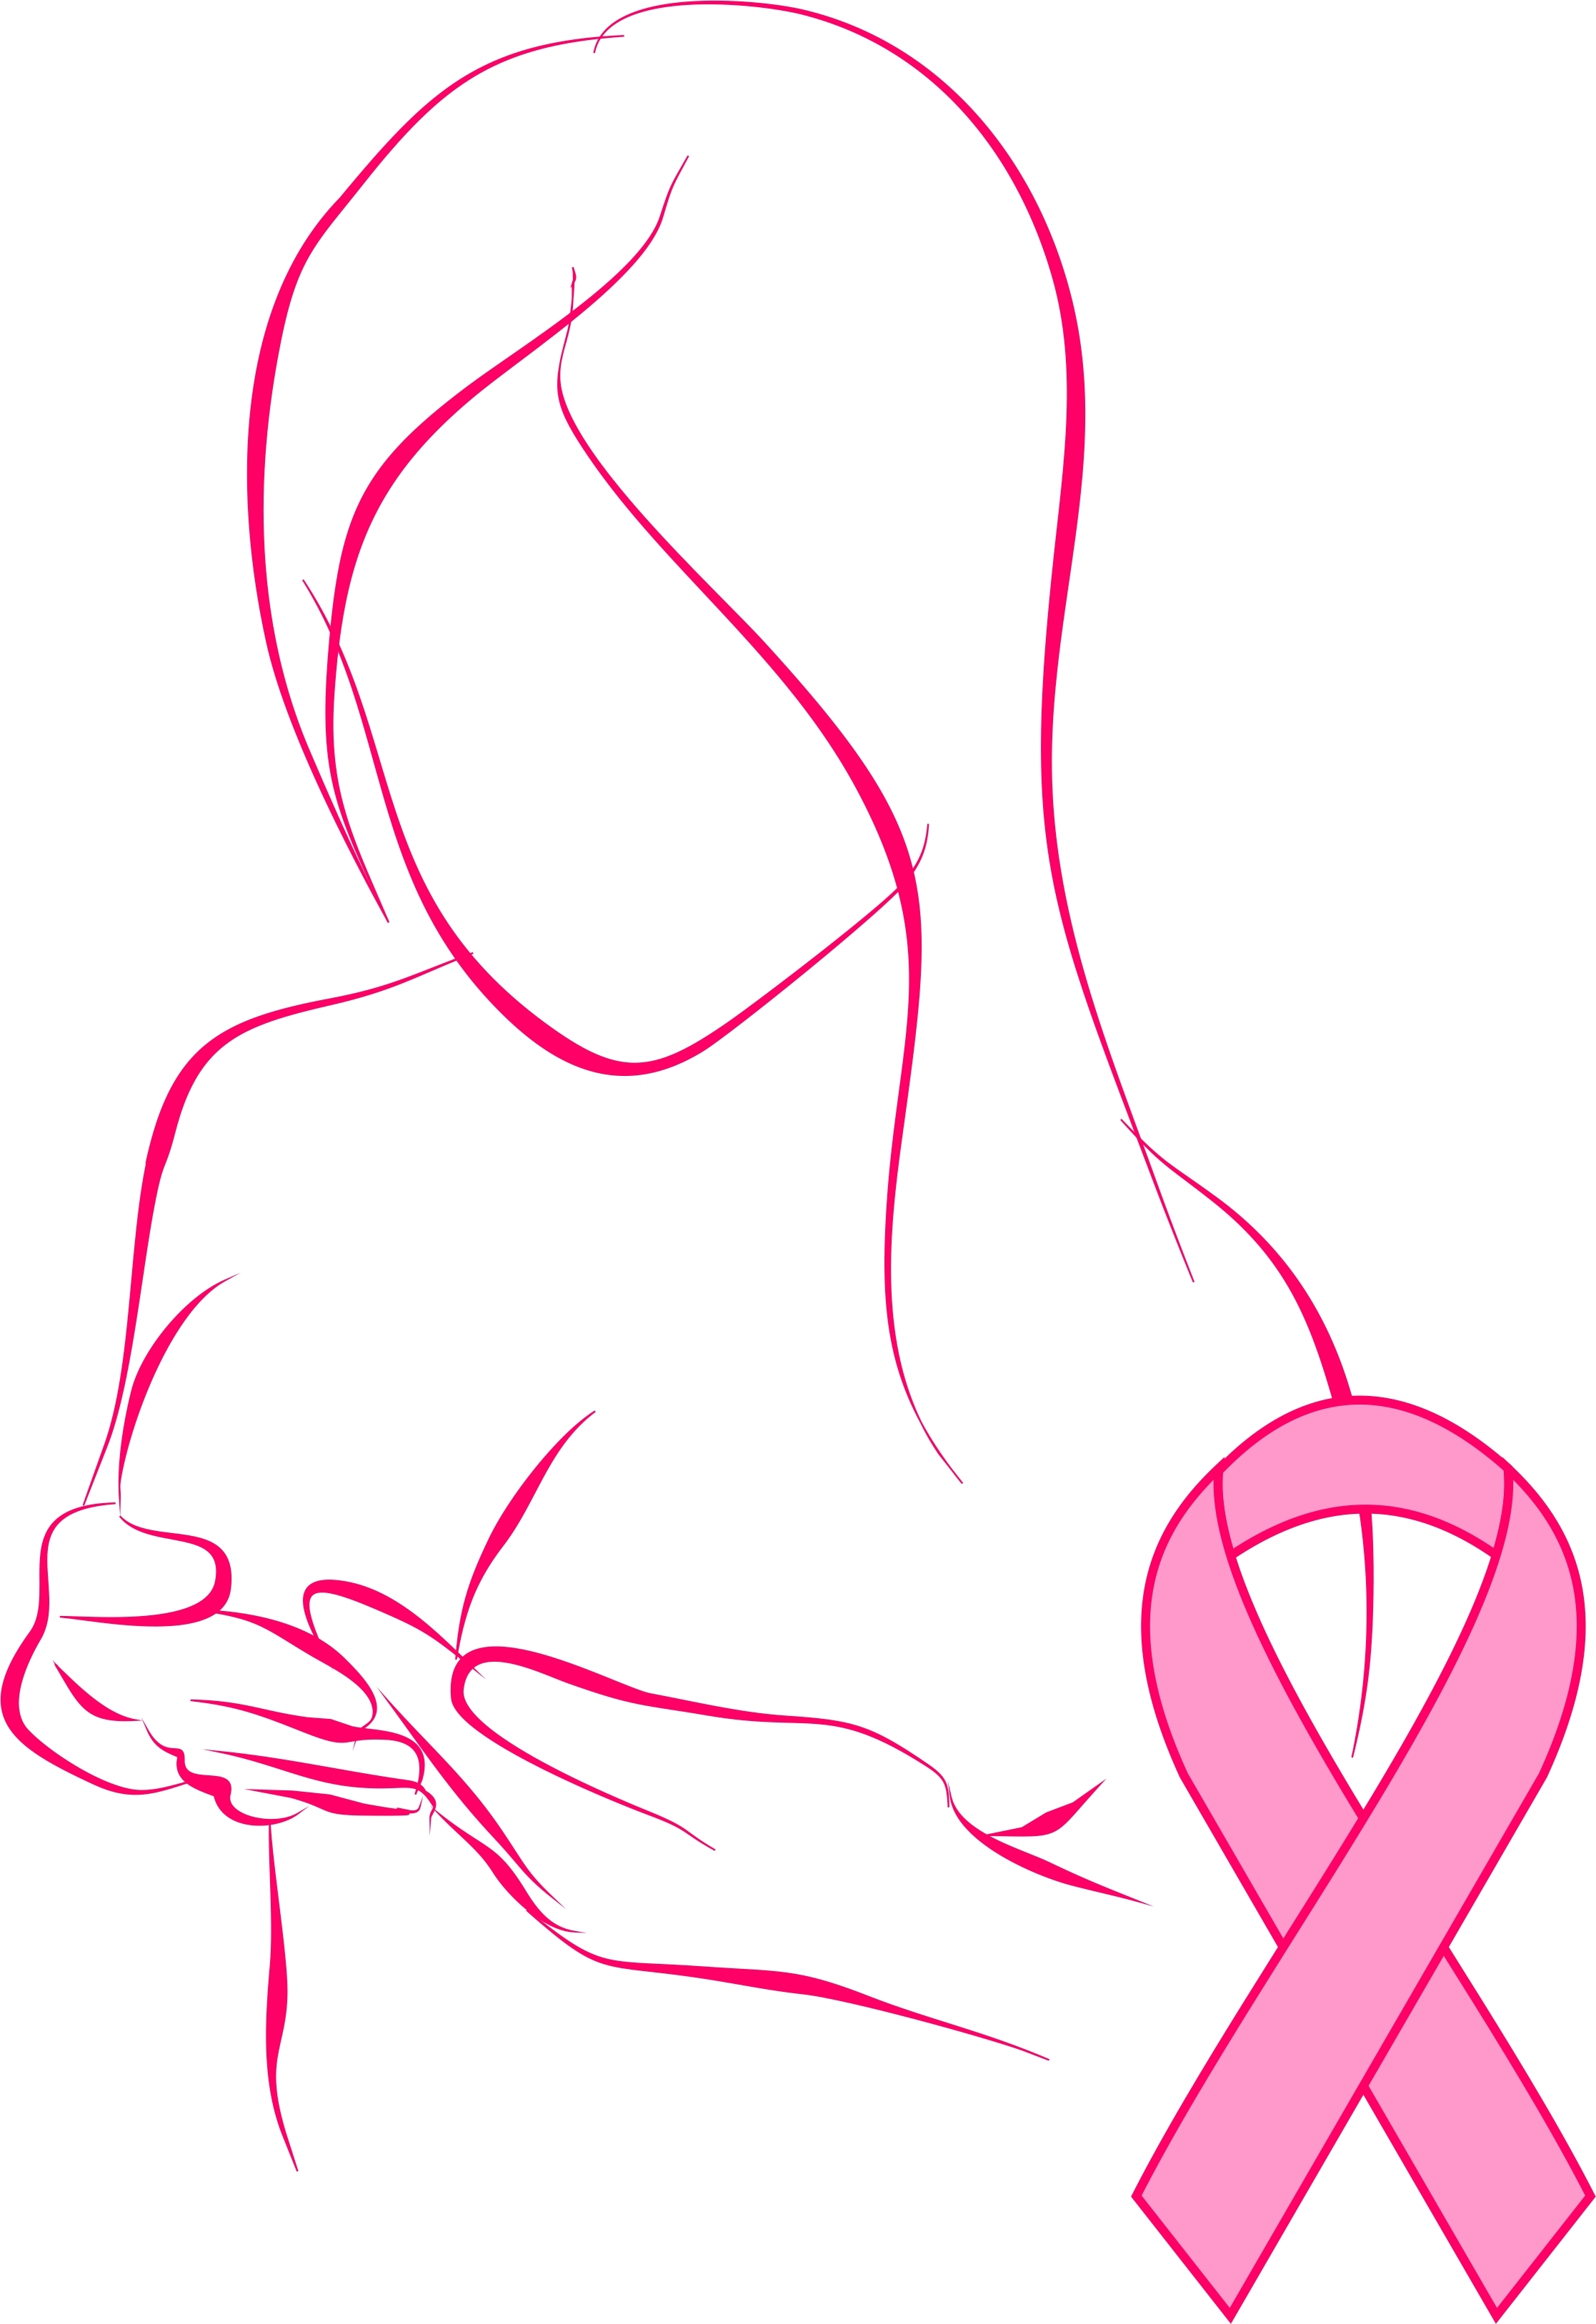 הטיפול הכירורגי בסרטן השד